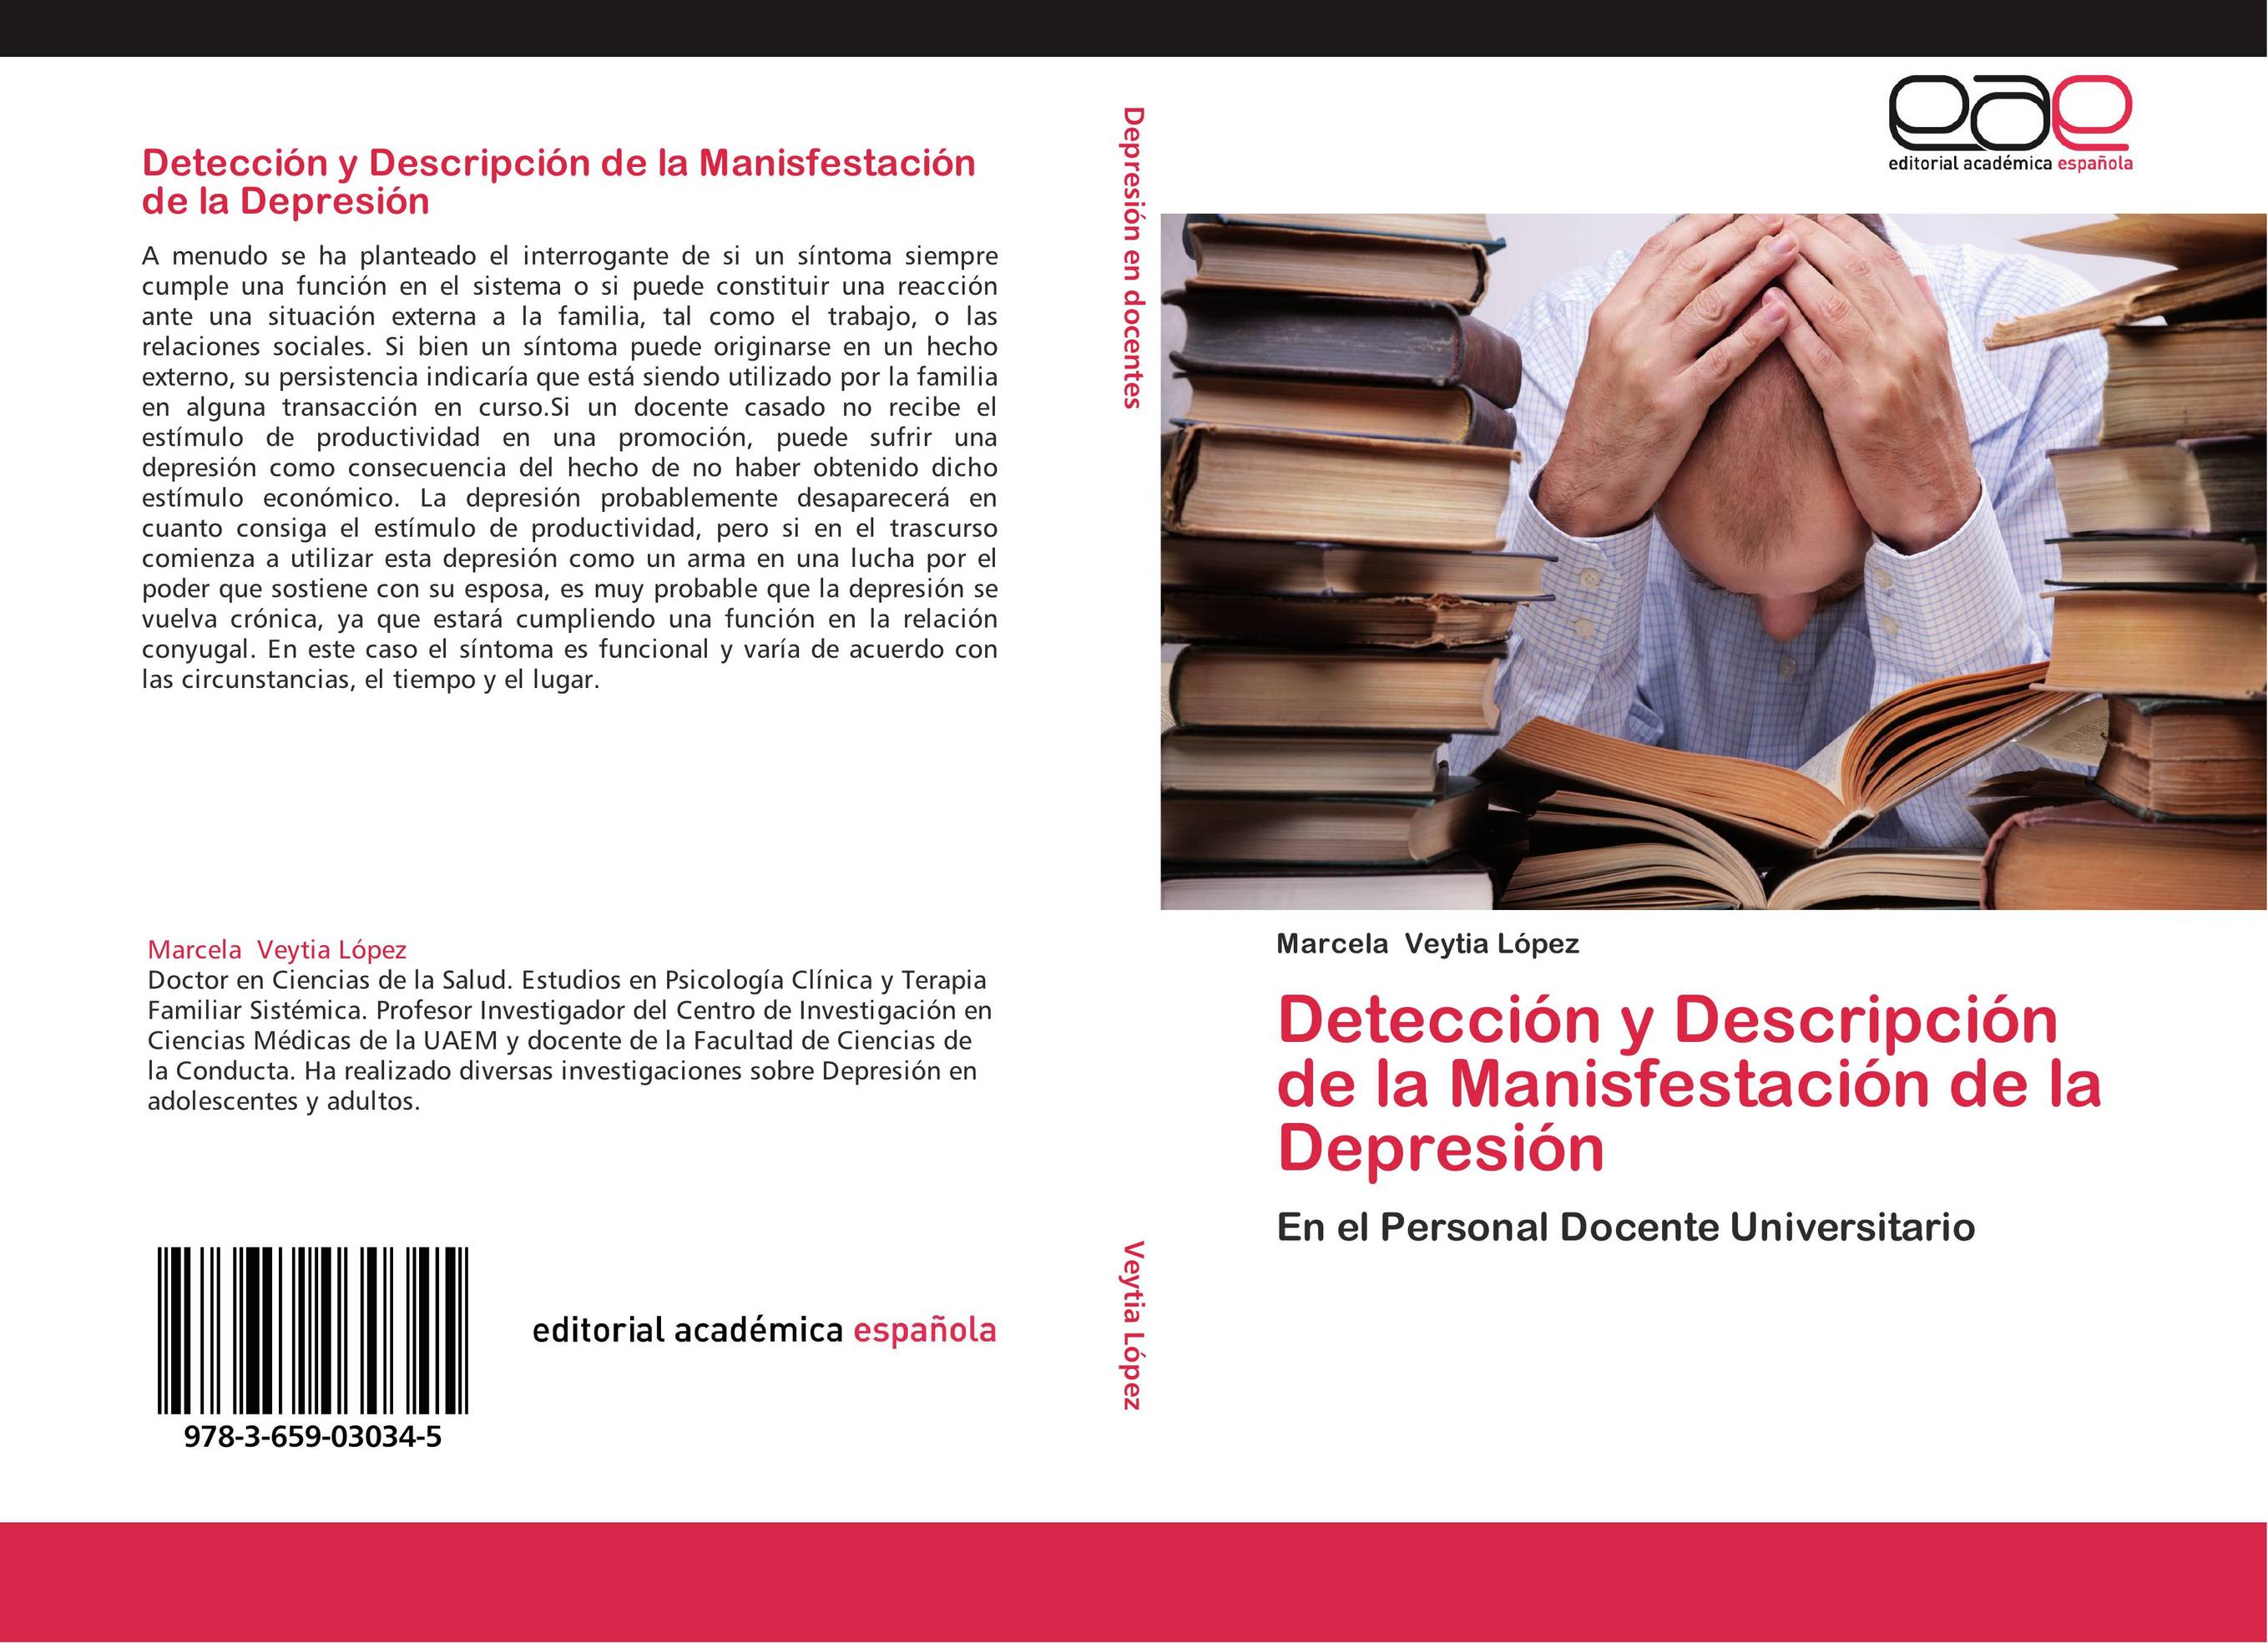 Detección y Descripción de la Manisfestación de la Depresión